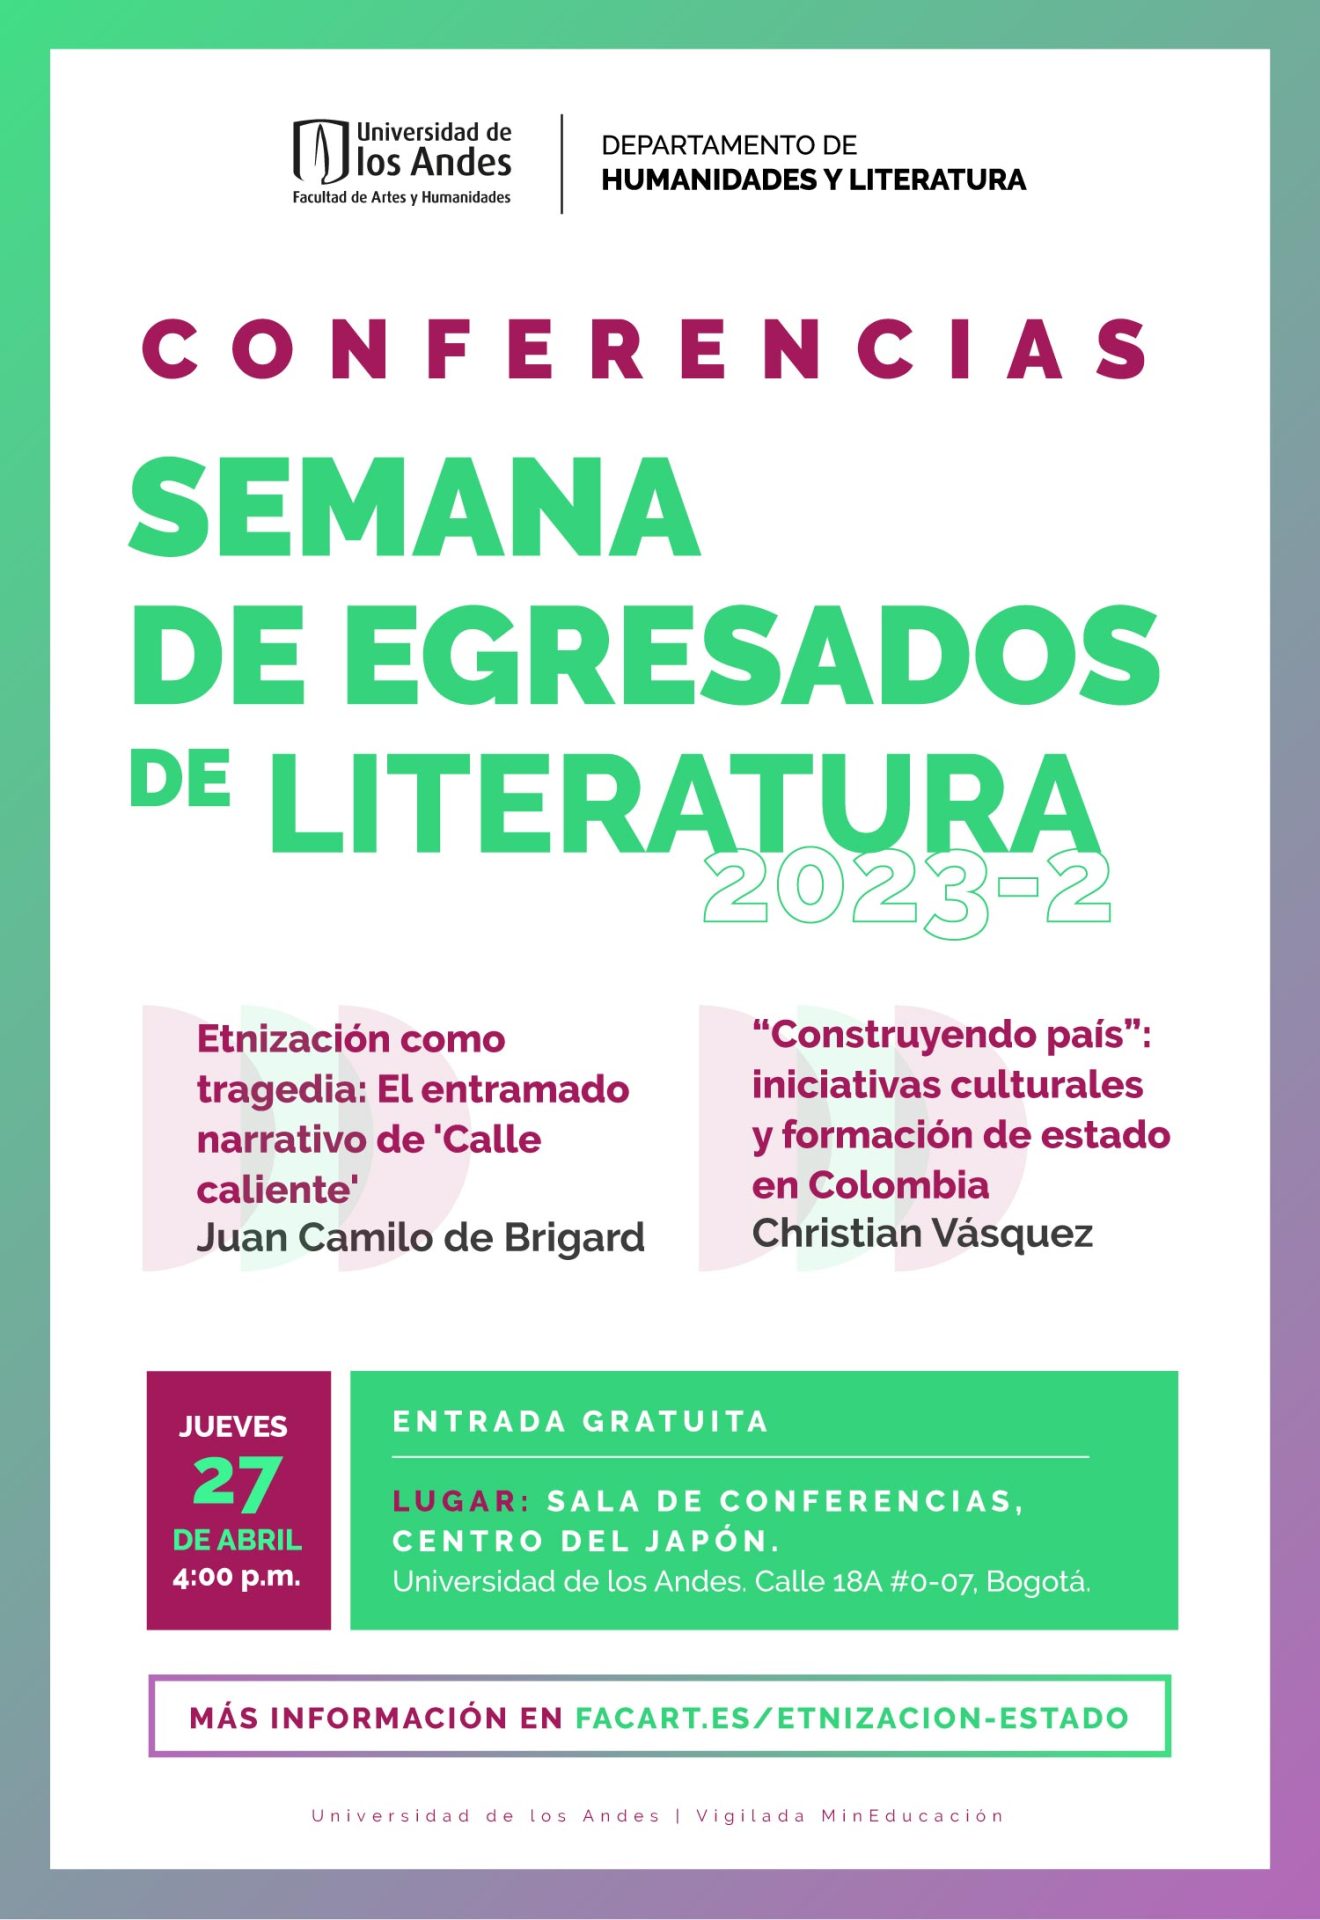 Dos conferencias en el marco de la semana de egresados de Literatura 2023-2. con Juan Camilo de Brigard y Cristian Vásquez